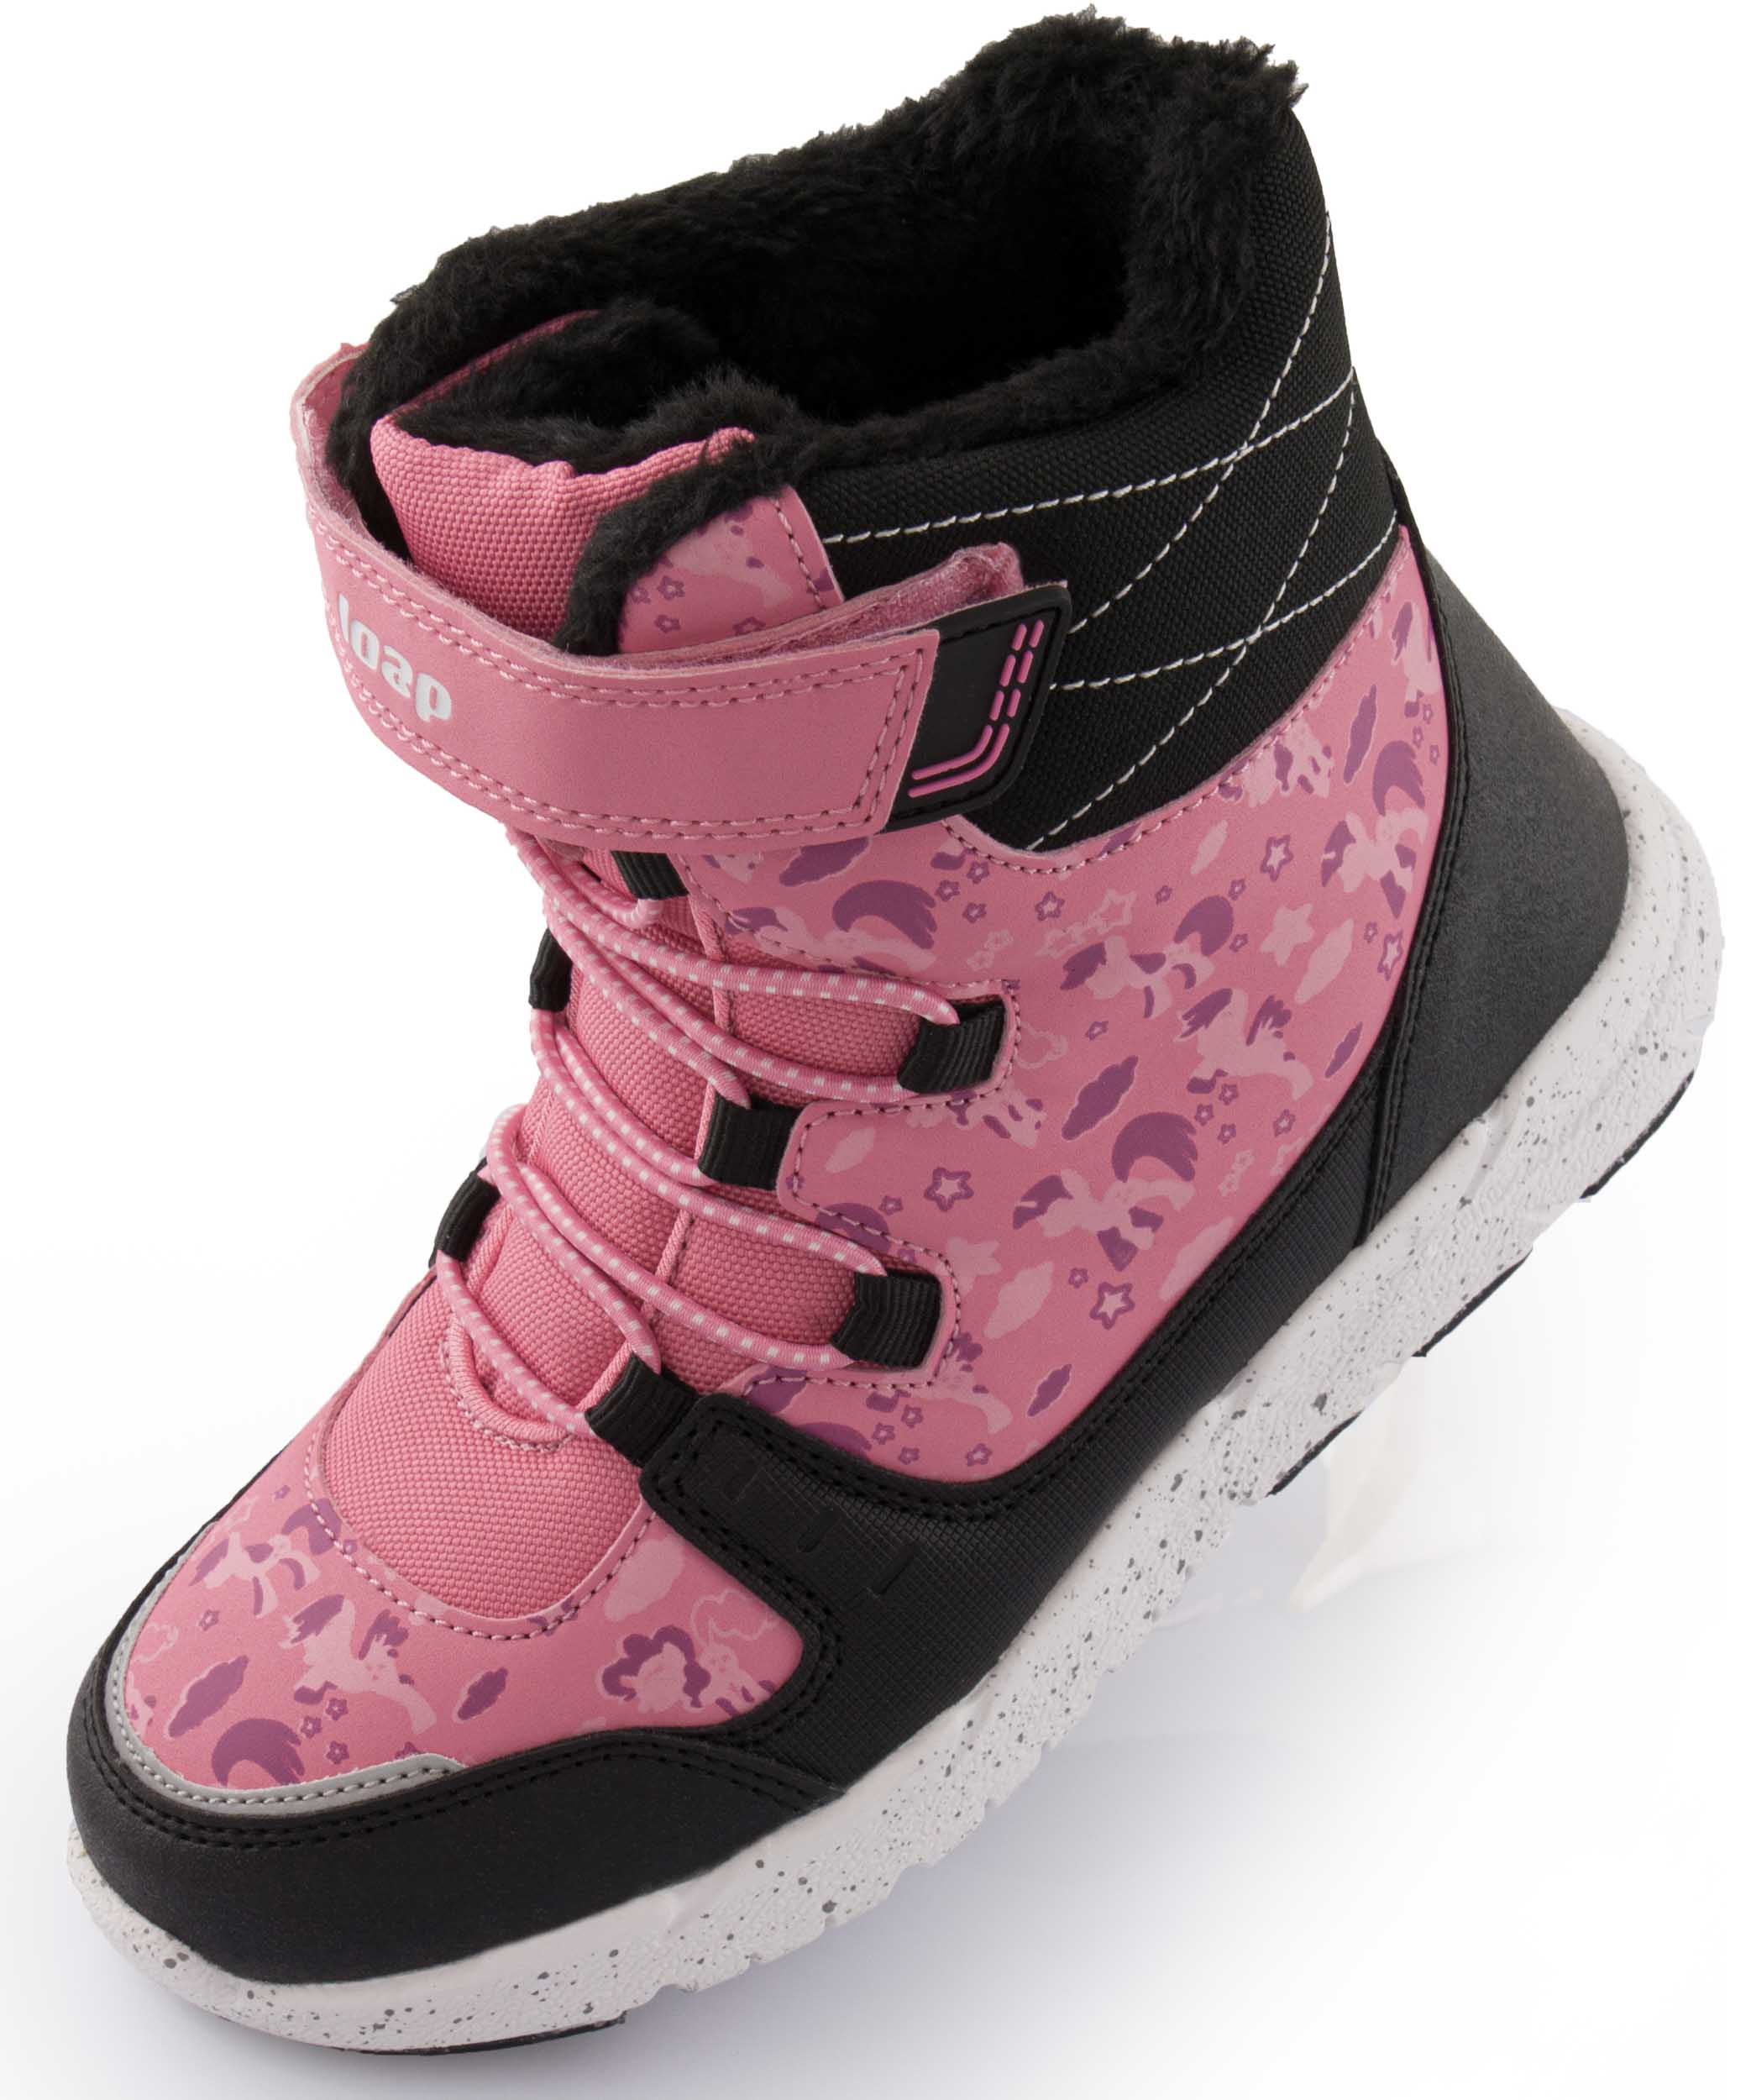 Dětské zimní boty Loap PIKE pink|26